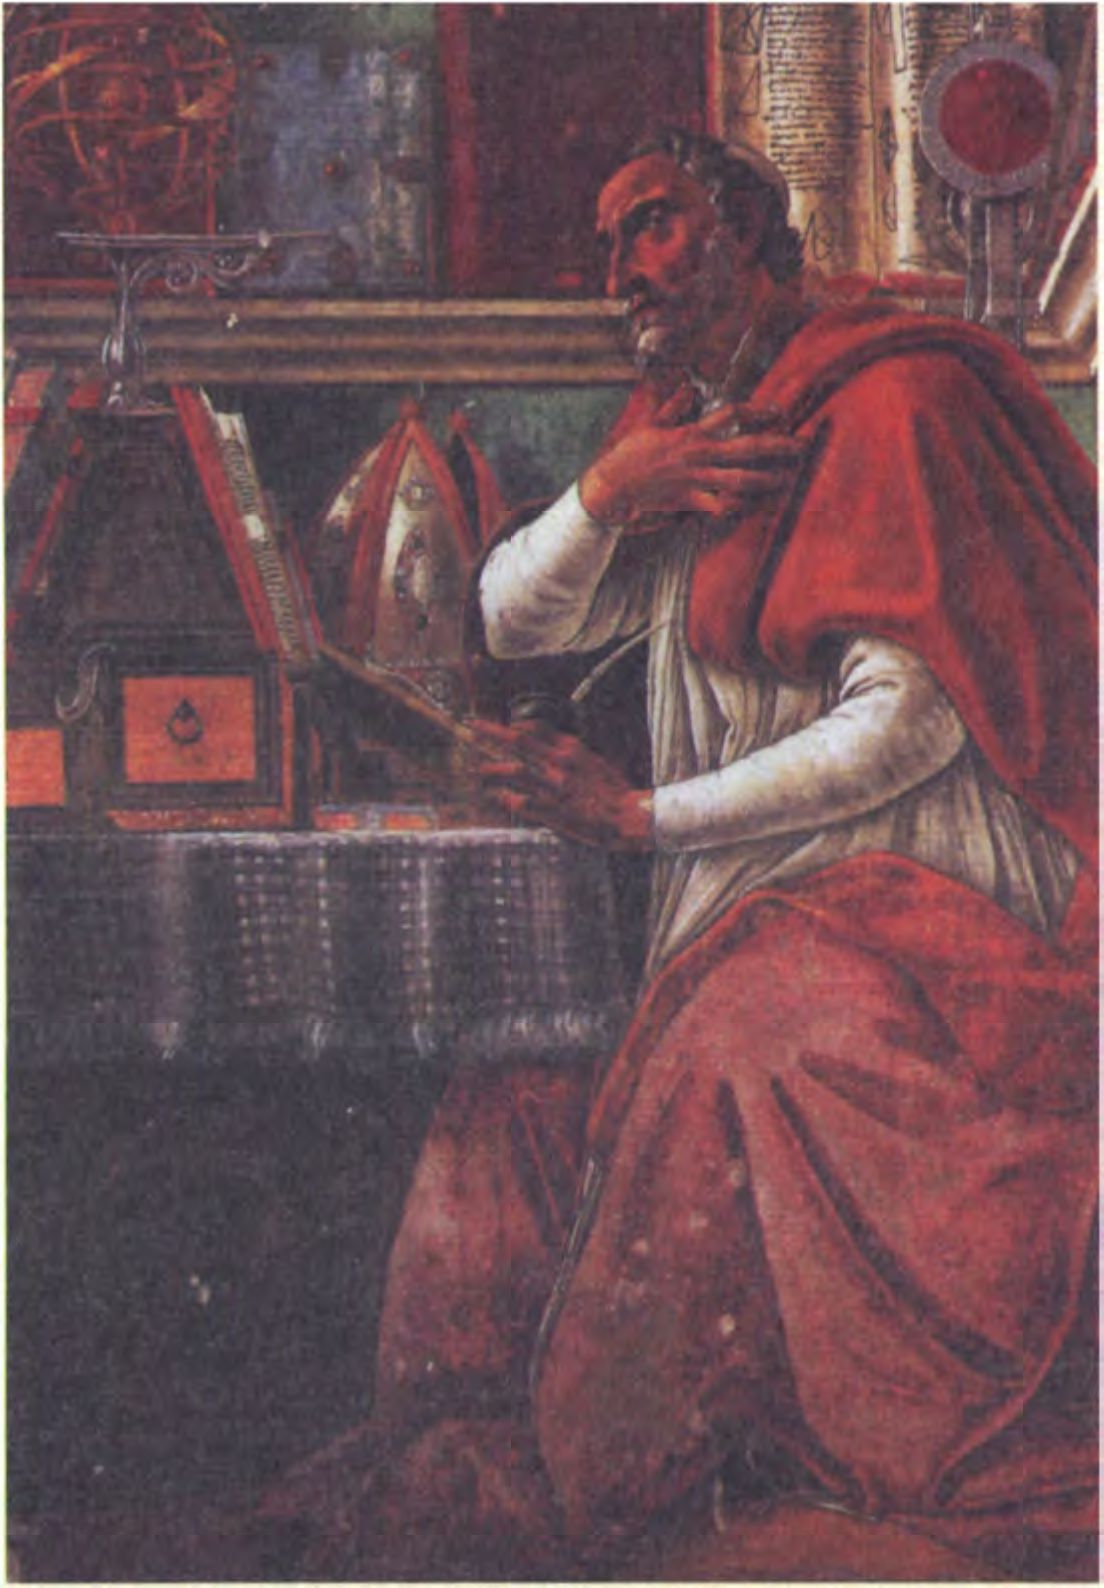 Св. Августин, работы Боттичелли. Августин преследовал астрологию, как пережиток языческого прошлого. Его авторитет на протяжении последующих столетий являлся весомым аргументом против нее. (Галерея Уффици. Флоренция)